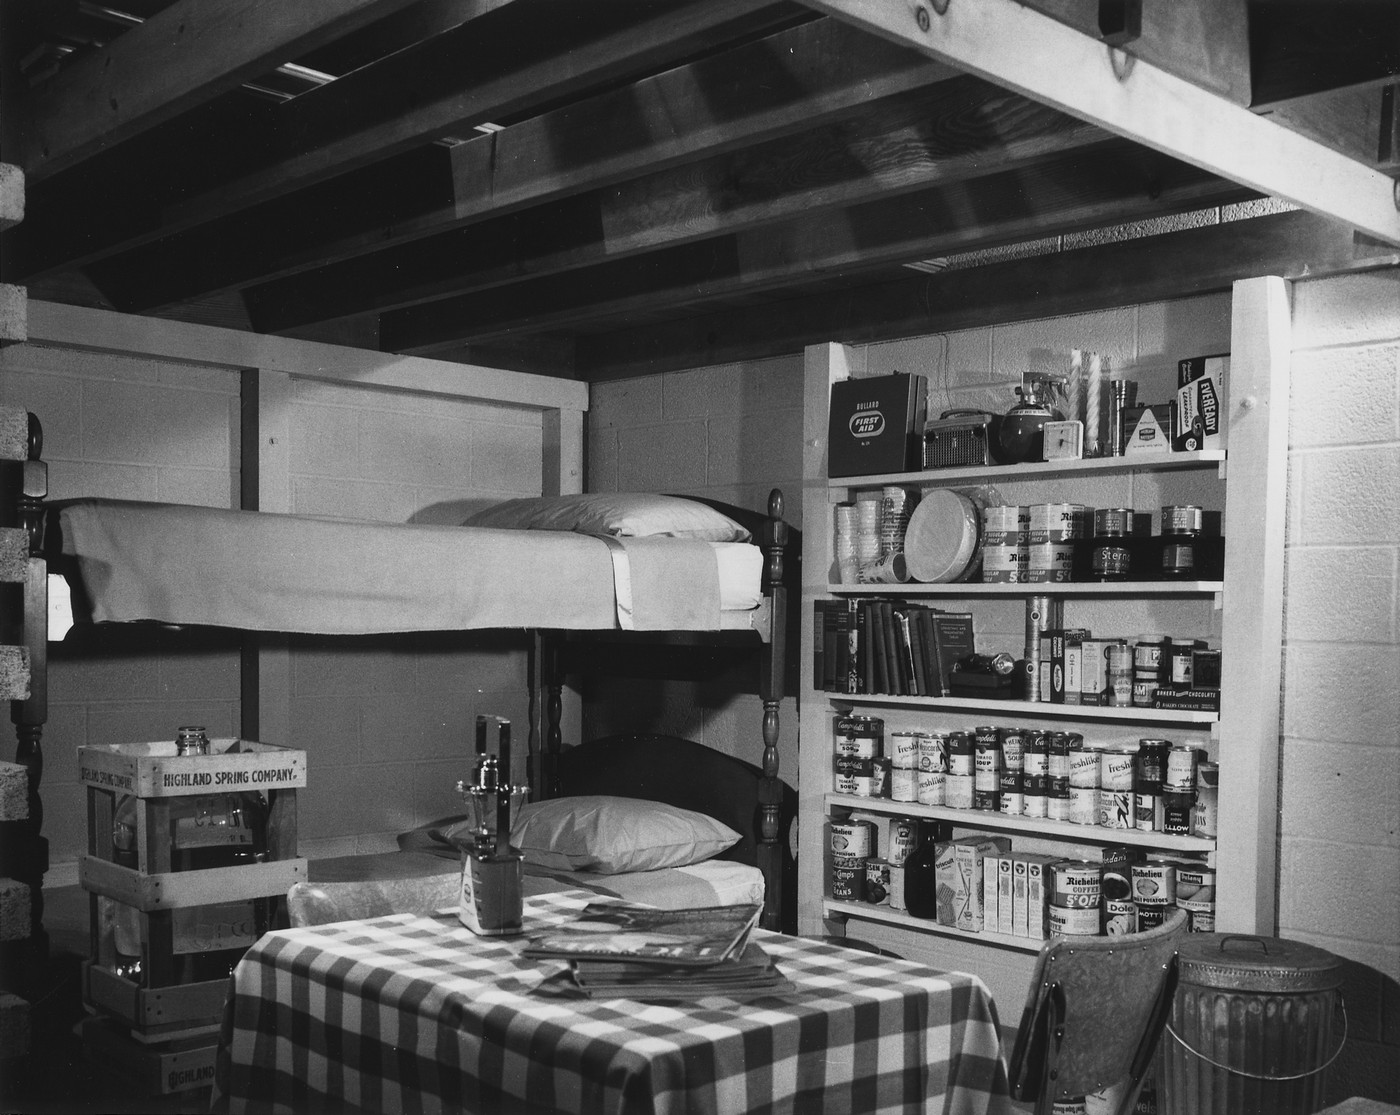 Интерьер семейного ядерного бомбоубежища, устроенного в подвале дома. В убежище имеется 14-дневный запас продовольствия и воды, радио с батарейным питанием, автономные источники света, набор медикаментов и инструментов. Ориентировочно 1957 год